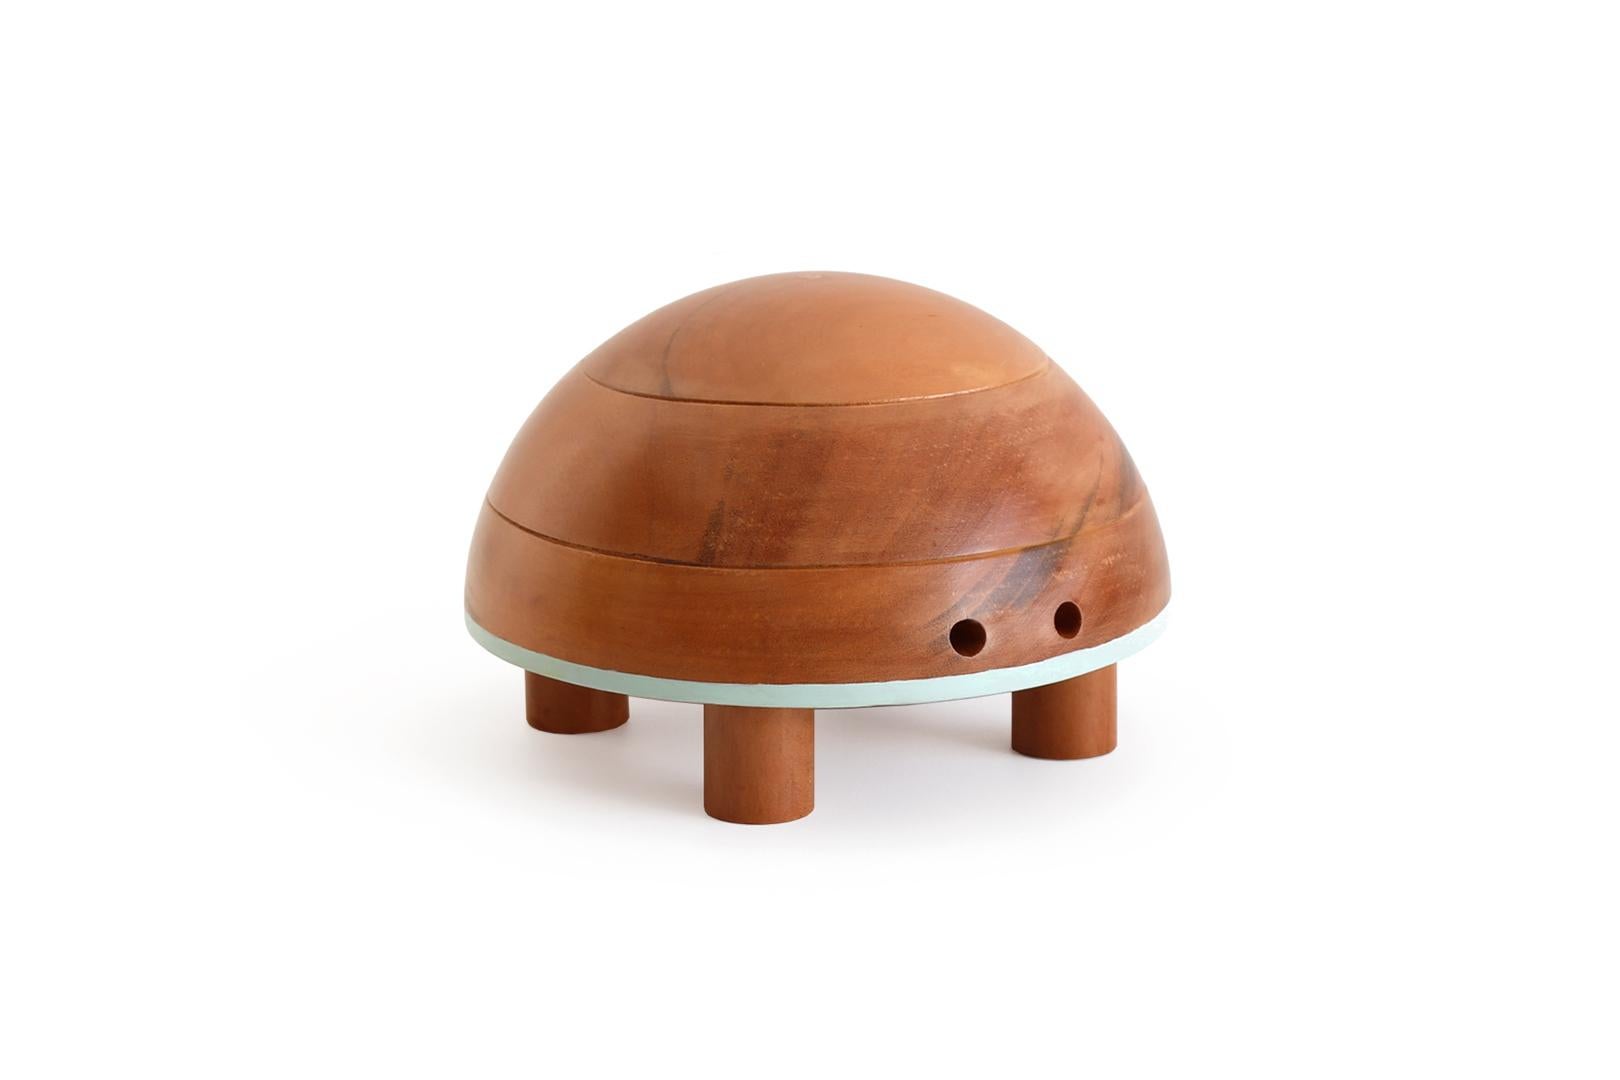 JABUTI (tortue en portugais) fait partie de la collection Bichos do Brasil qui est constituée d'objets décoratifs et de collection de figurines en bois représentant des animaux de la faune brésilienne.
Le design de la collection se traduit par un